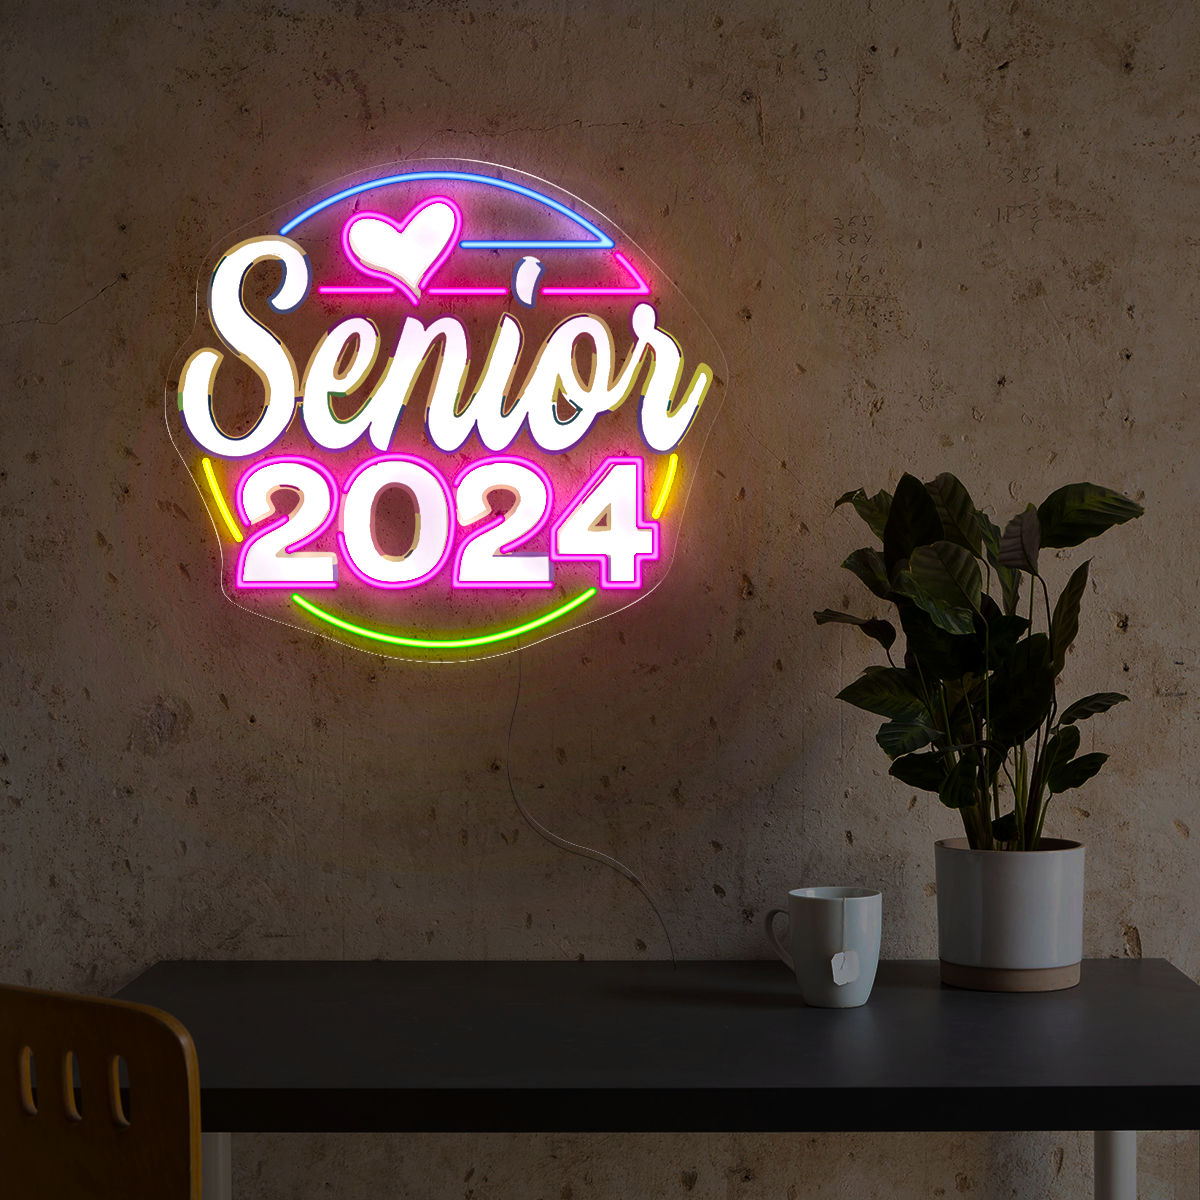 Senior 2024 Artwork Neon Sign